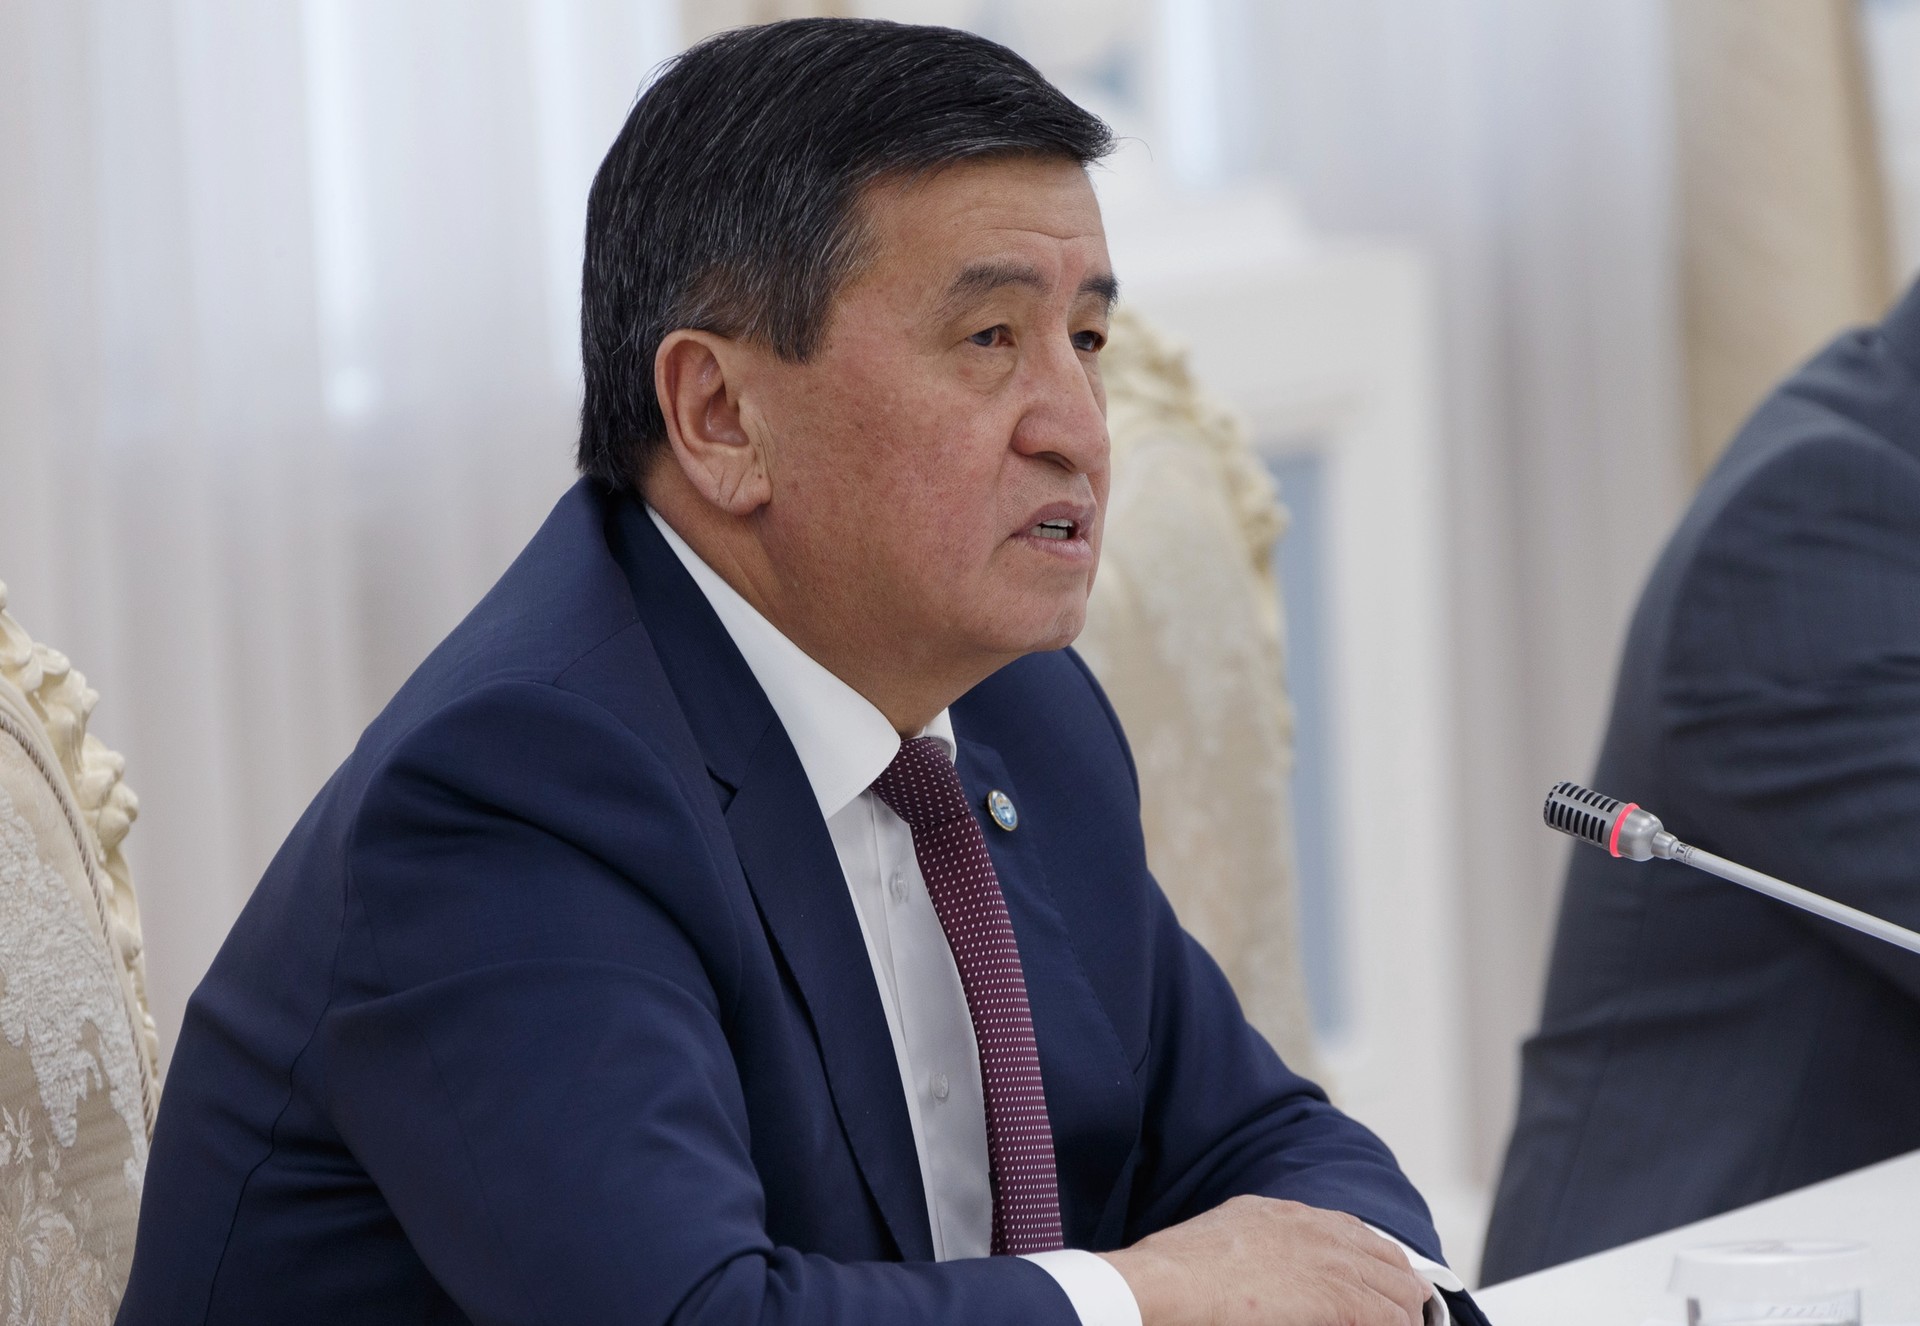 Демократические стандарты: США выделят $2,5 млн на поддержку парламентских выборов в Киргизии